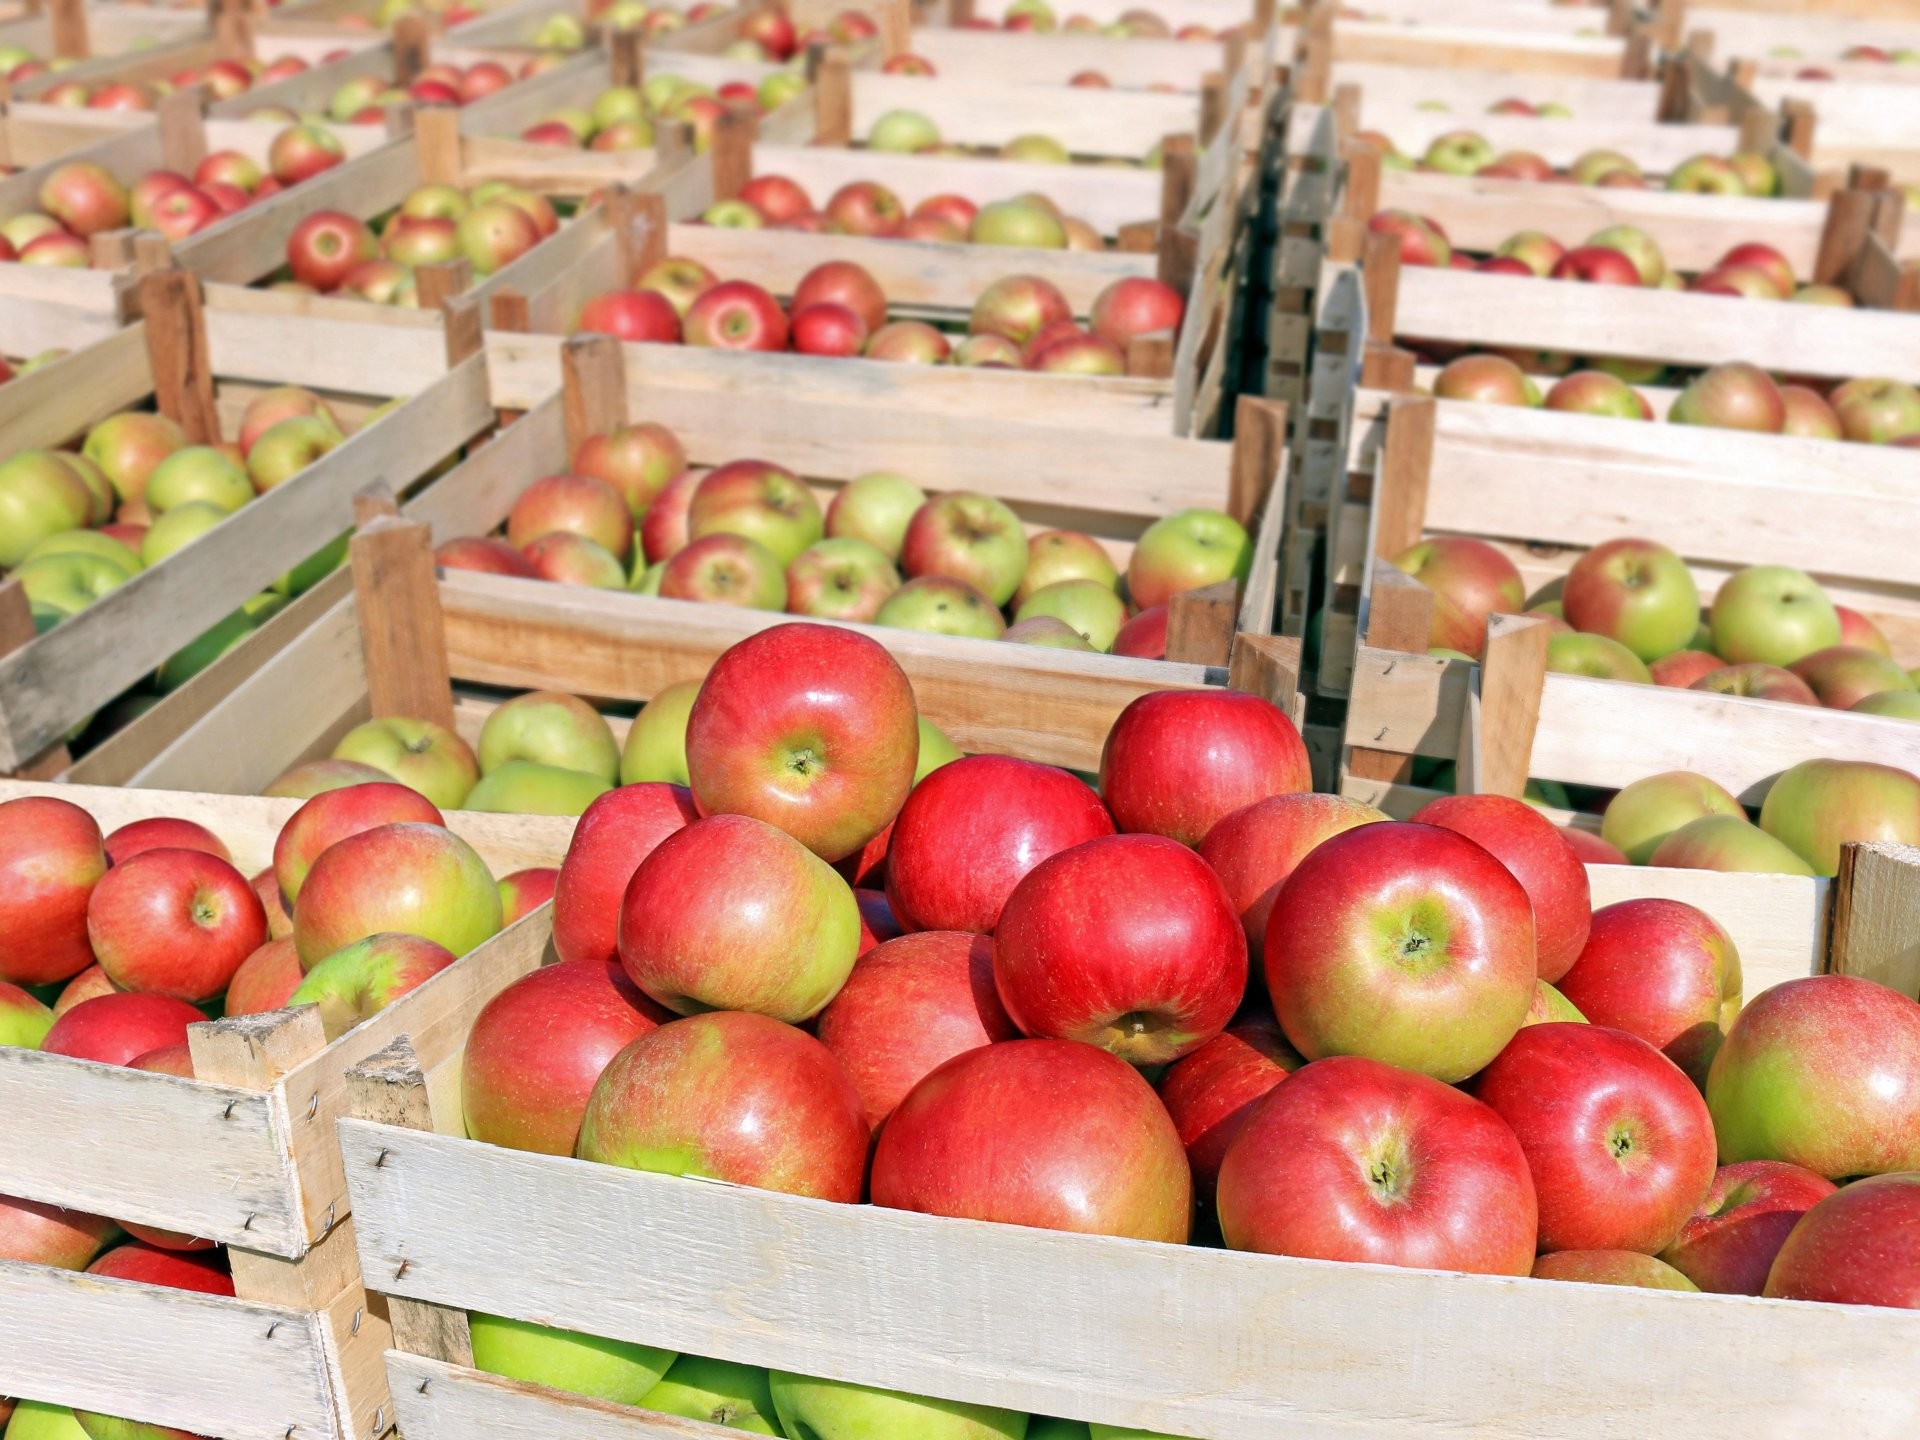 Buy New South Wales based Supermarket - Fruit N Veggies N Grocerries